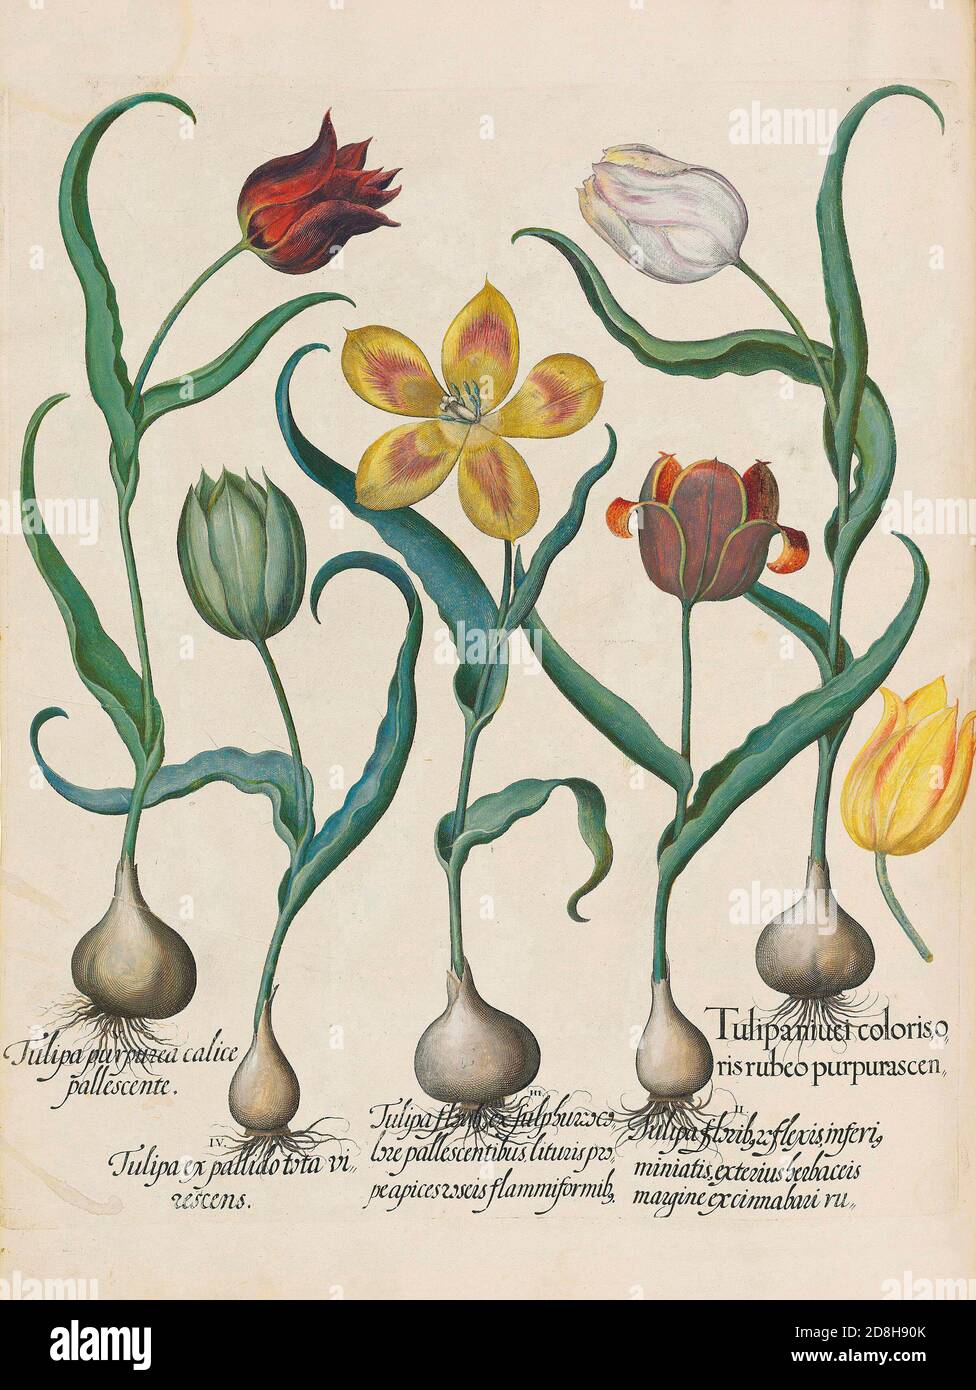 Tulpen, botanische Illustration von Basil Besler aus der Hortus Eystettensis, einem Codex von Basilius Besler aus dem Jahr 1613. Stockfoto